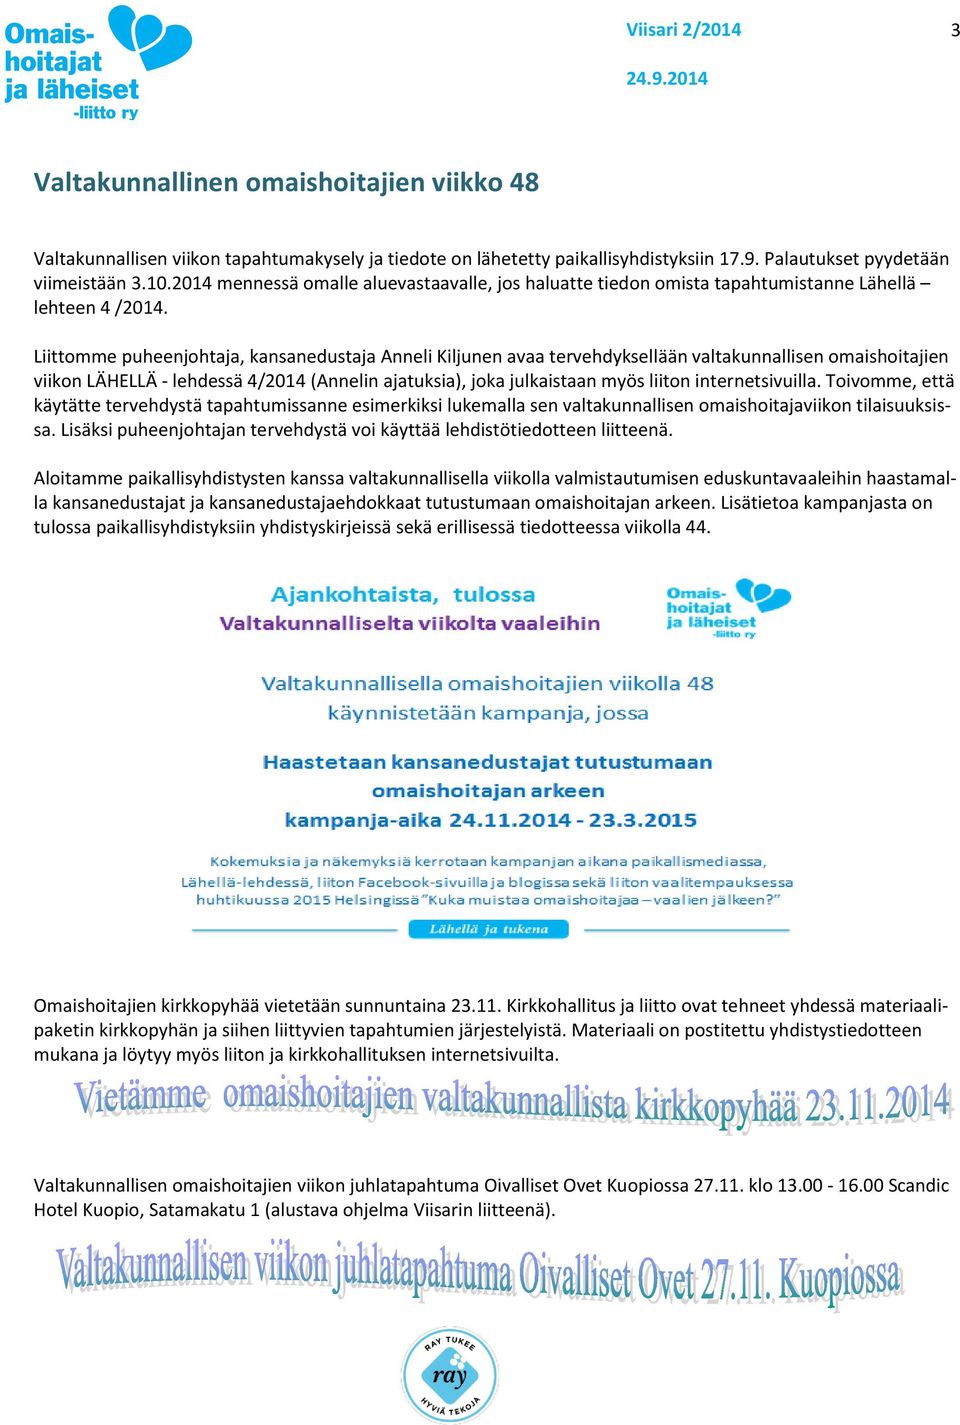 Liittomme puheenjohtaja, kansanedustaja Anneli Kiljunen avaa tervehdyksellään valtakunnallisen omaishoitajien viikon LÄHELLÄ - lehdessä 4/2014 (Annelin ajatuksia), joka julkaistaan myös liiton